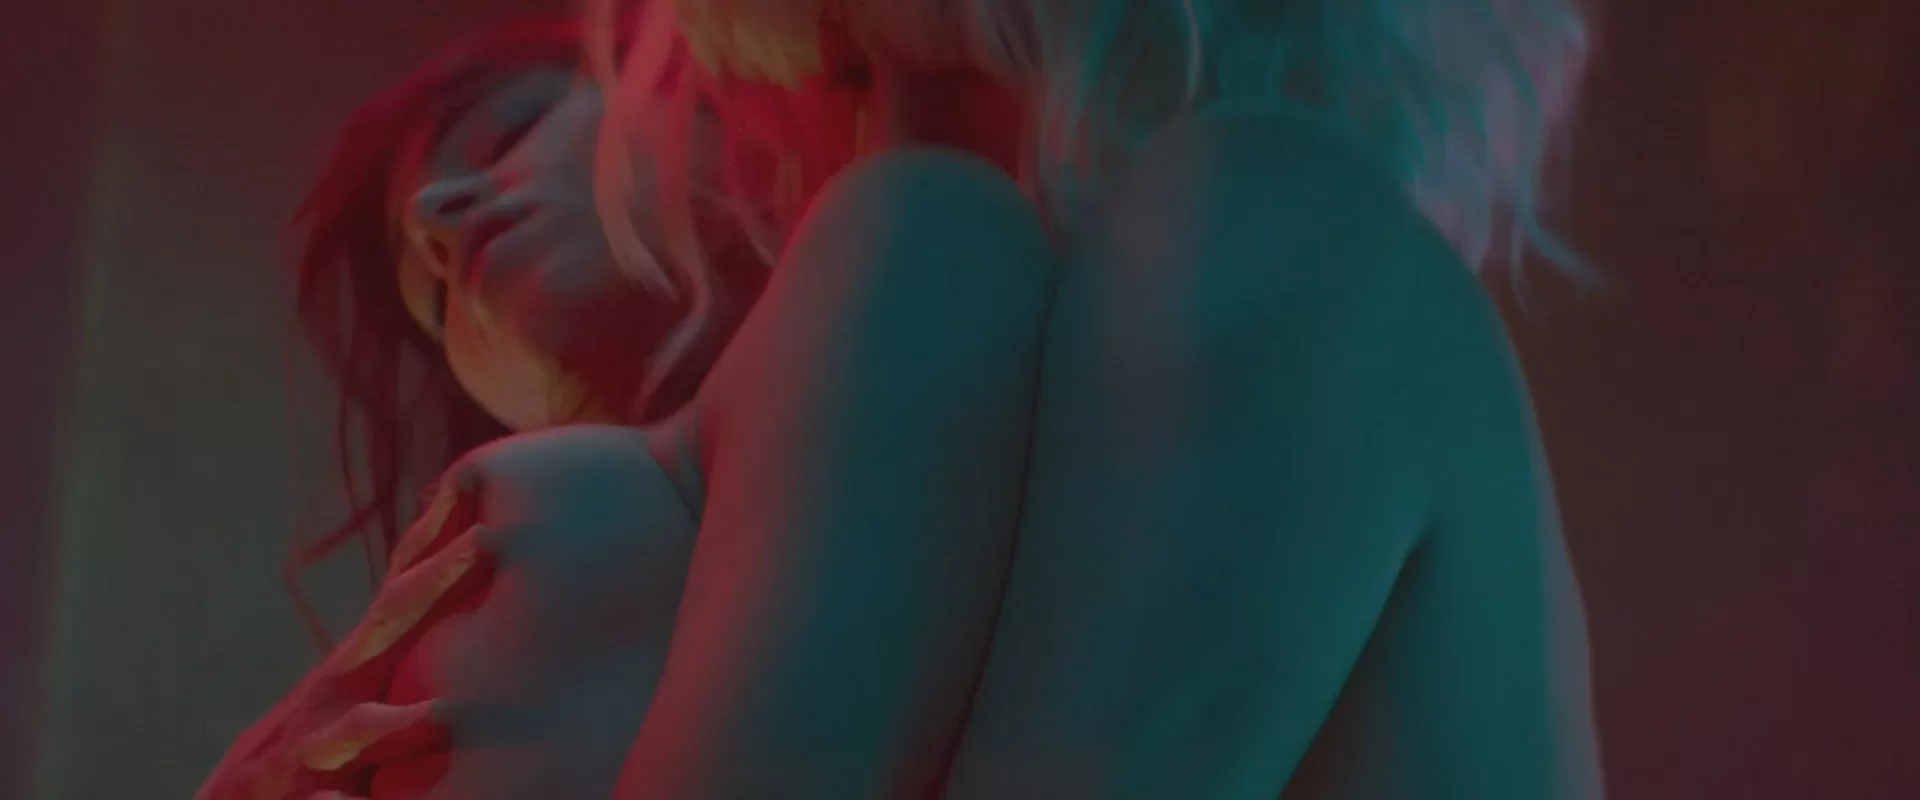 Atomic blonde sex scene porn celeb nude